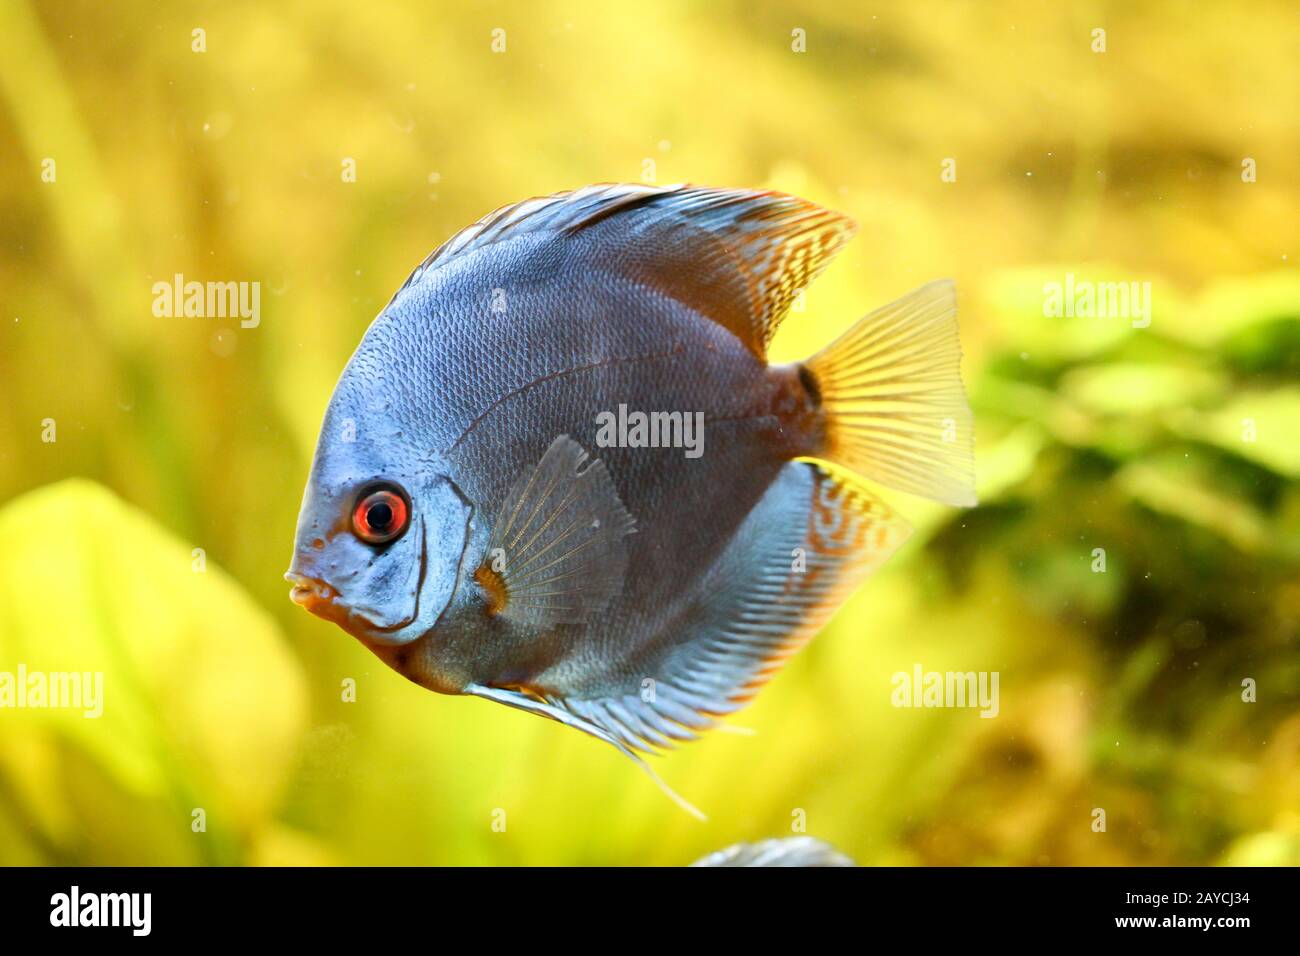 Discus fish in the aquarium. Discus are fish from the genus Symphysodon. Stock Photo